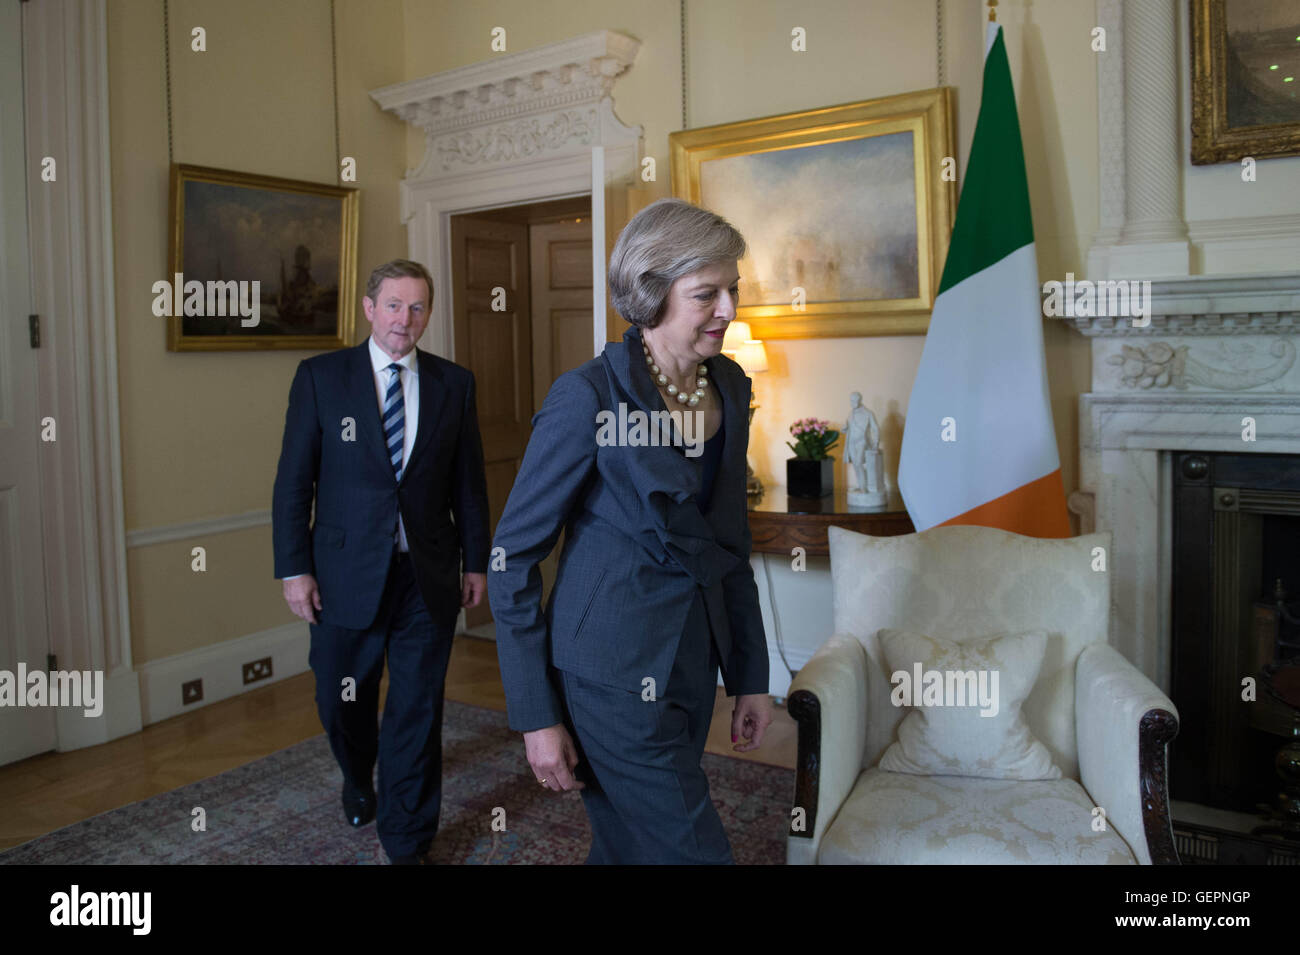 Premier ministre Theresa peut au Taoiseach irlandais Enda Kenny à l'intérieur de 10 Downing Street, Londres, avant les dernières réunions sur la façon Brexit se déroulera. Banque D'Images